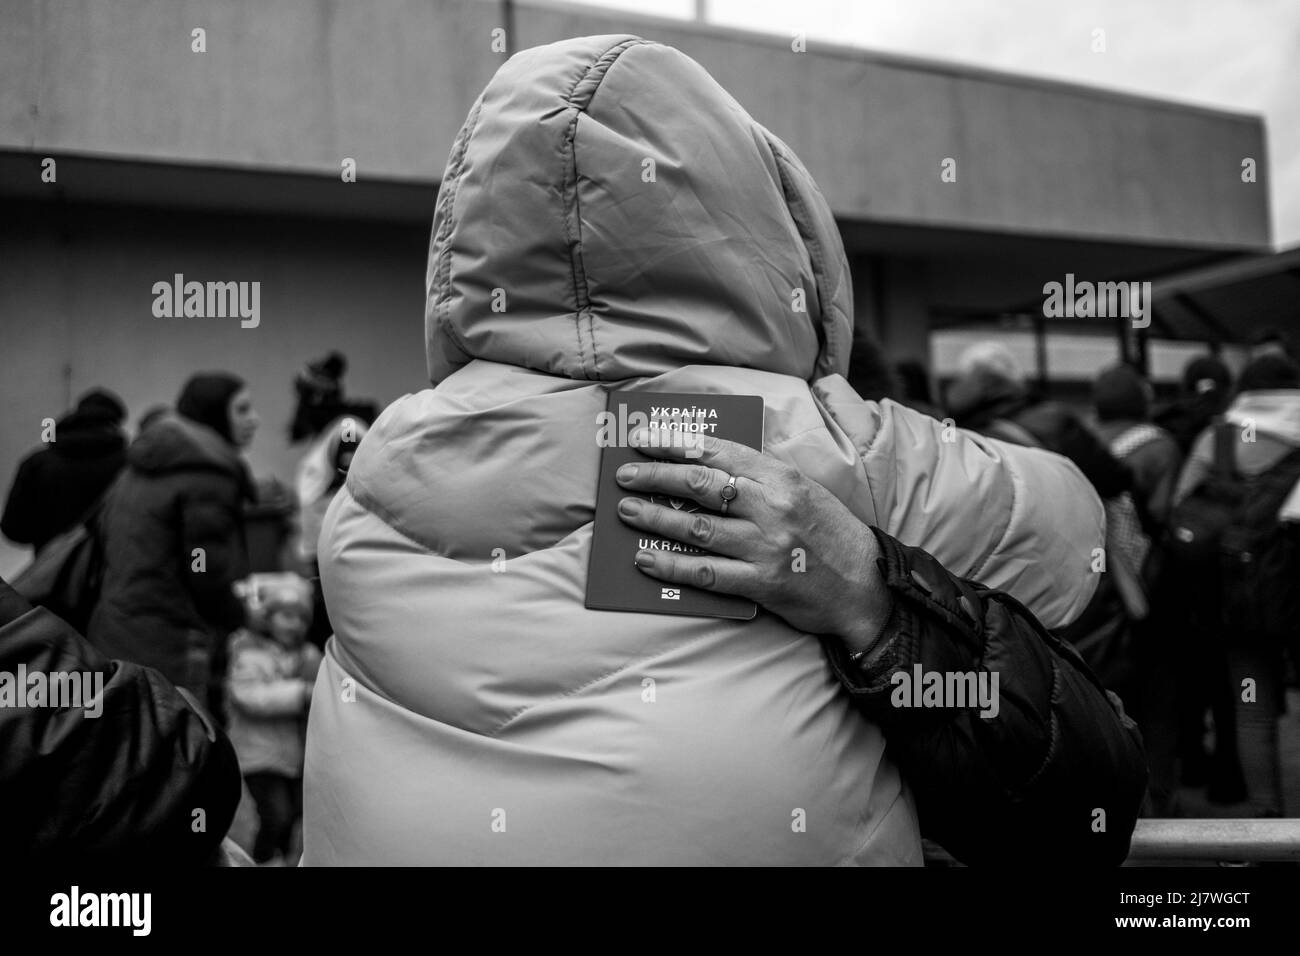 Michael Bunel / le Pictorium - rifugiati al confine polacco-ucraino in seguito all'invasione dell'Ucraina da parte dell'esercito russo - 5/3/2022 - - due Foto Stock